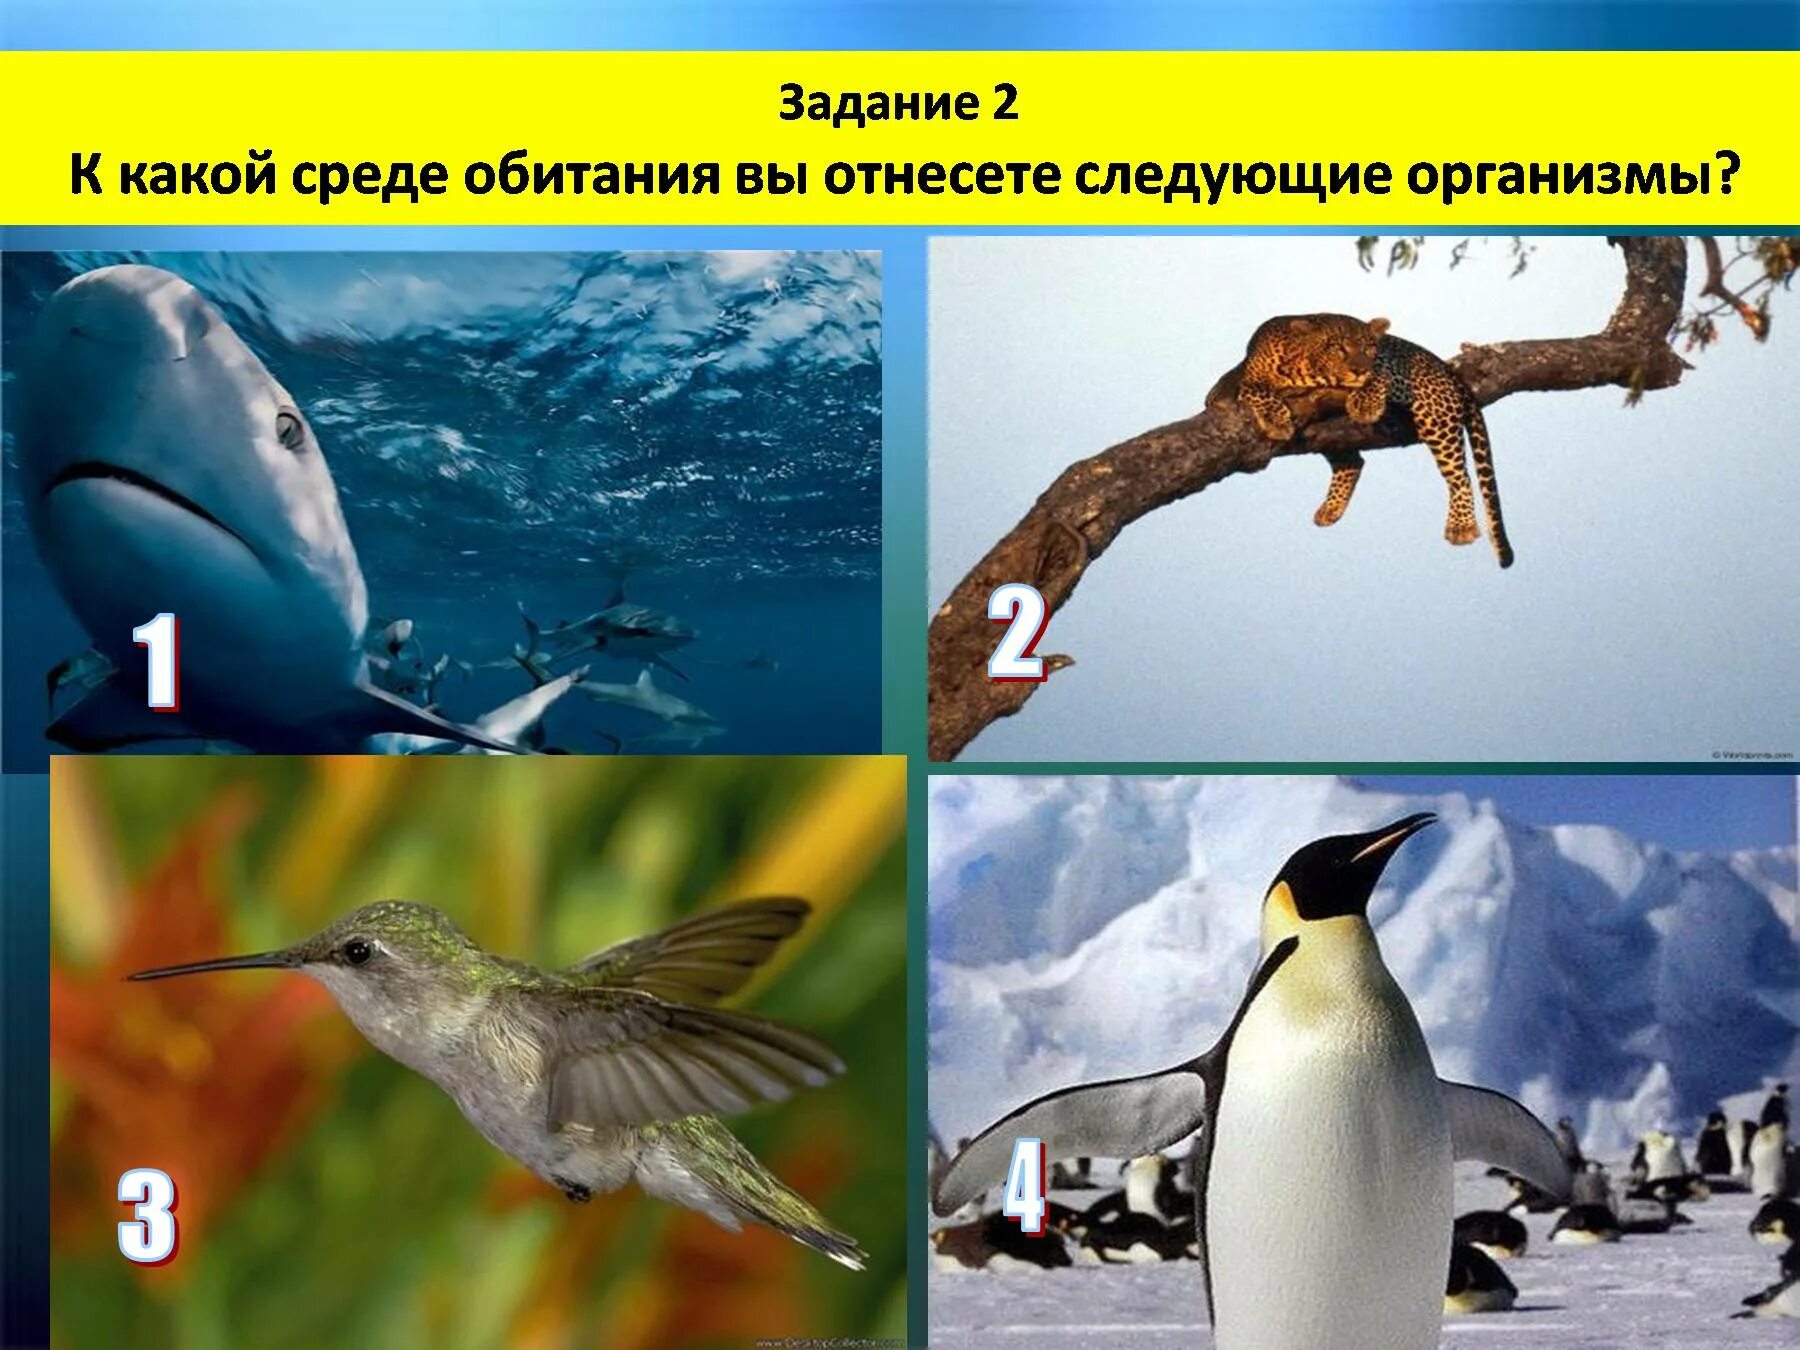 Организмы обитающие в разных средах. Среды обитания организмов. Среда обитания птиц. Среда обитания задания.